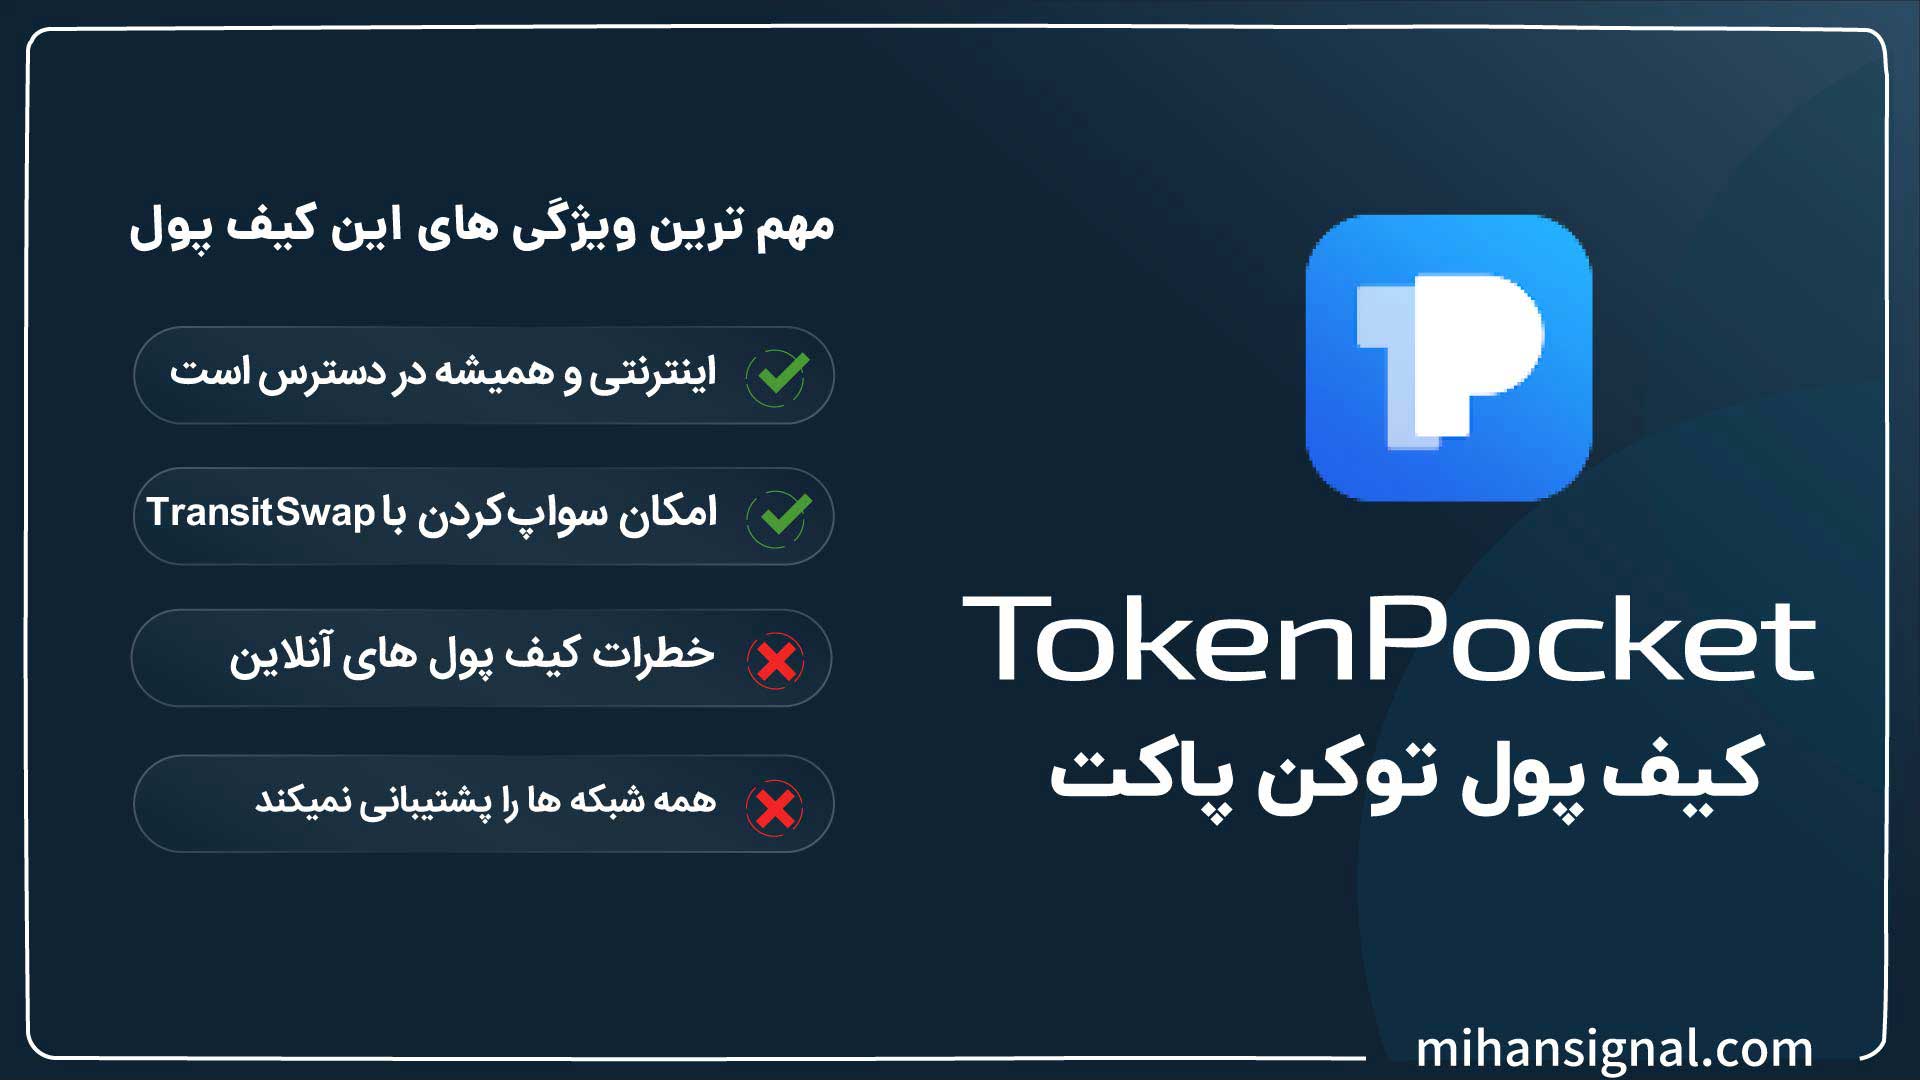 مزایا و معایب کیف پول TokenPocket